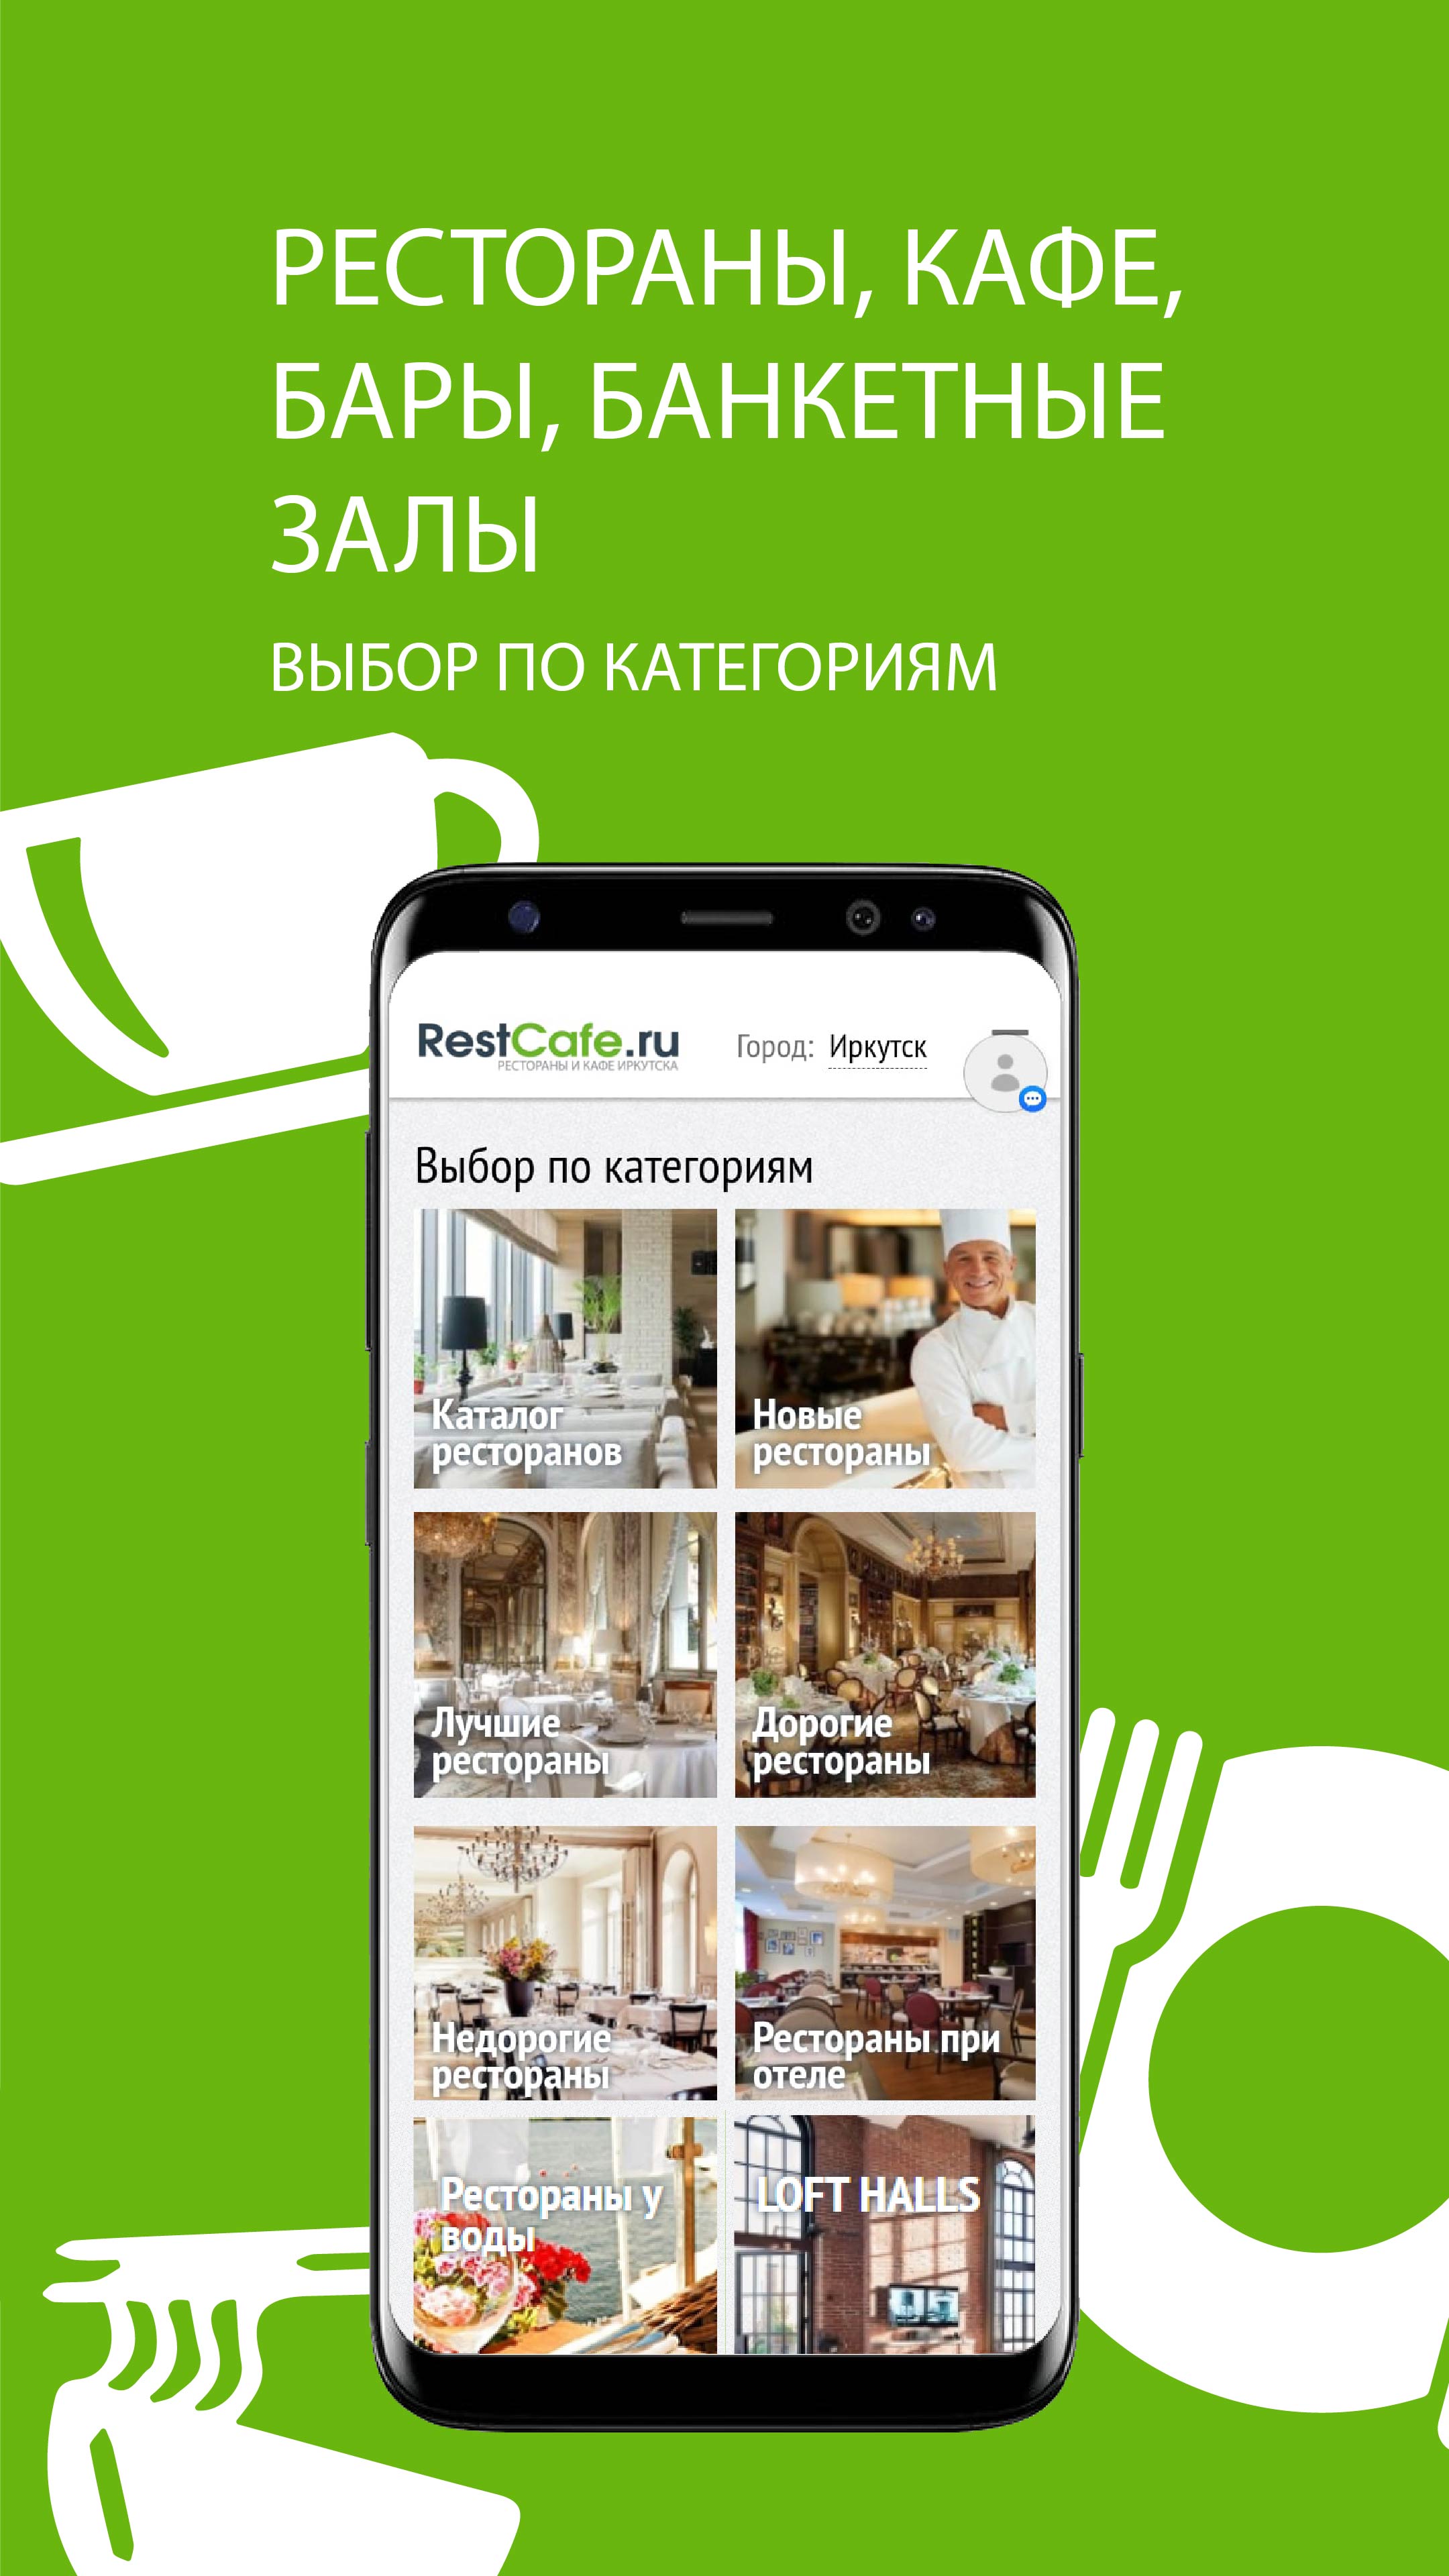 Изображение: RestCafe.ru – сервис бронирования и доставки еды